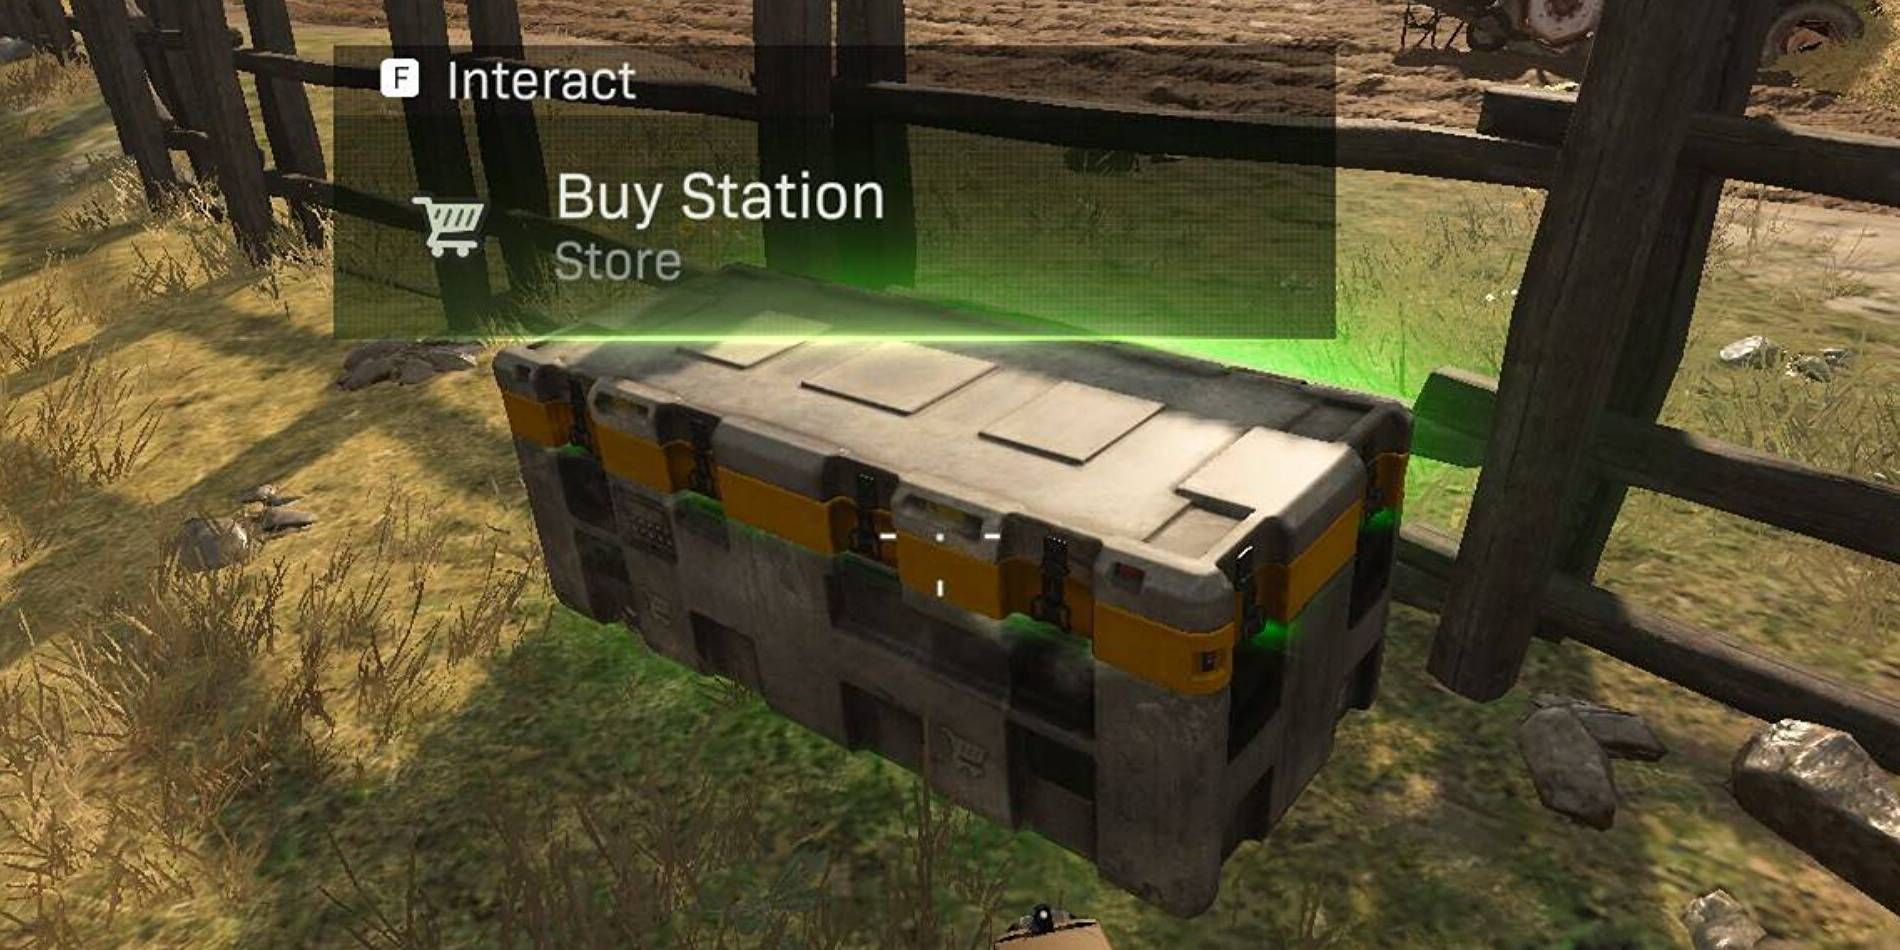 Call of Duty: Warzone 2.0 Buy Station pour acheter des articles, des chargements, etc. pendant un match